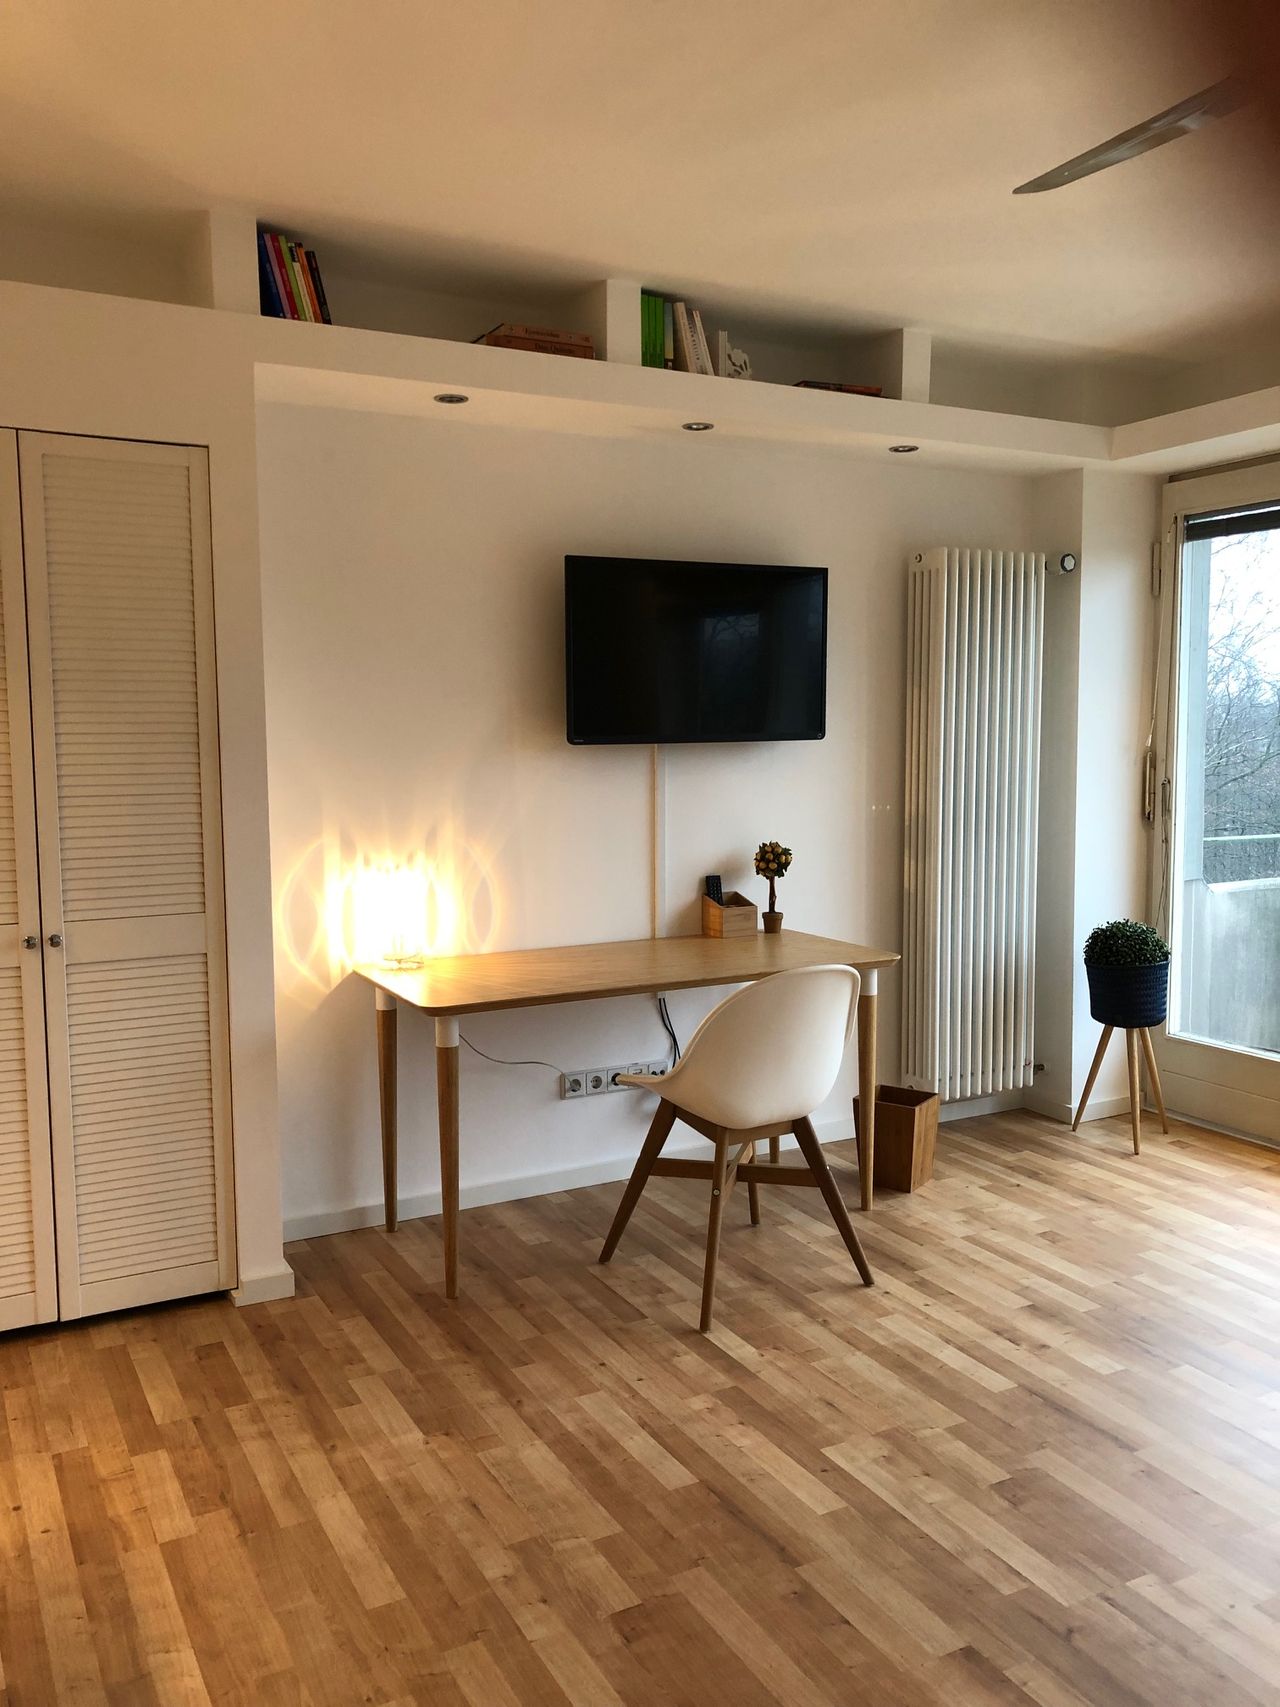 Pretty studio apartment, centrally located in Tiergarten Berlin